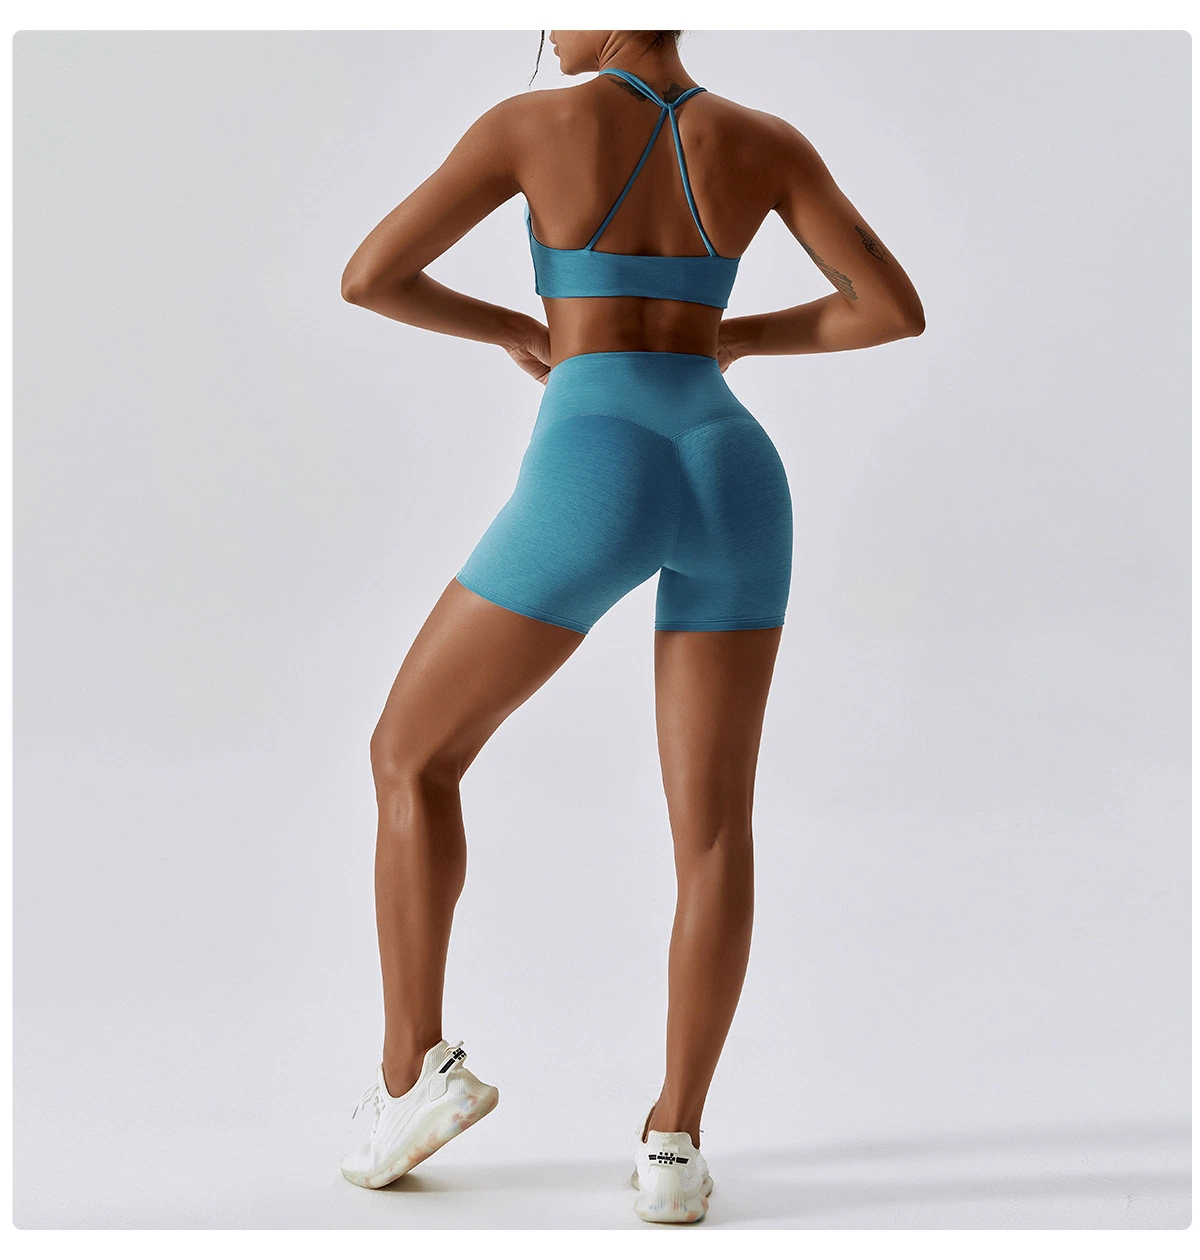 Mejor Venta de ropa deportiva Gym Fitness Yoga se adapta a conjunto Backless sujetador deportivo estilo de giro Sexy Athletic Active Wear 2 Piezas entrenar